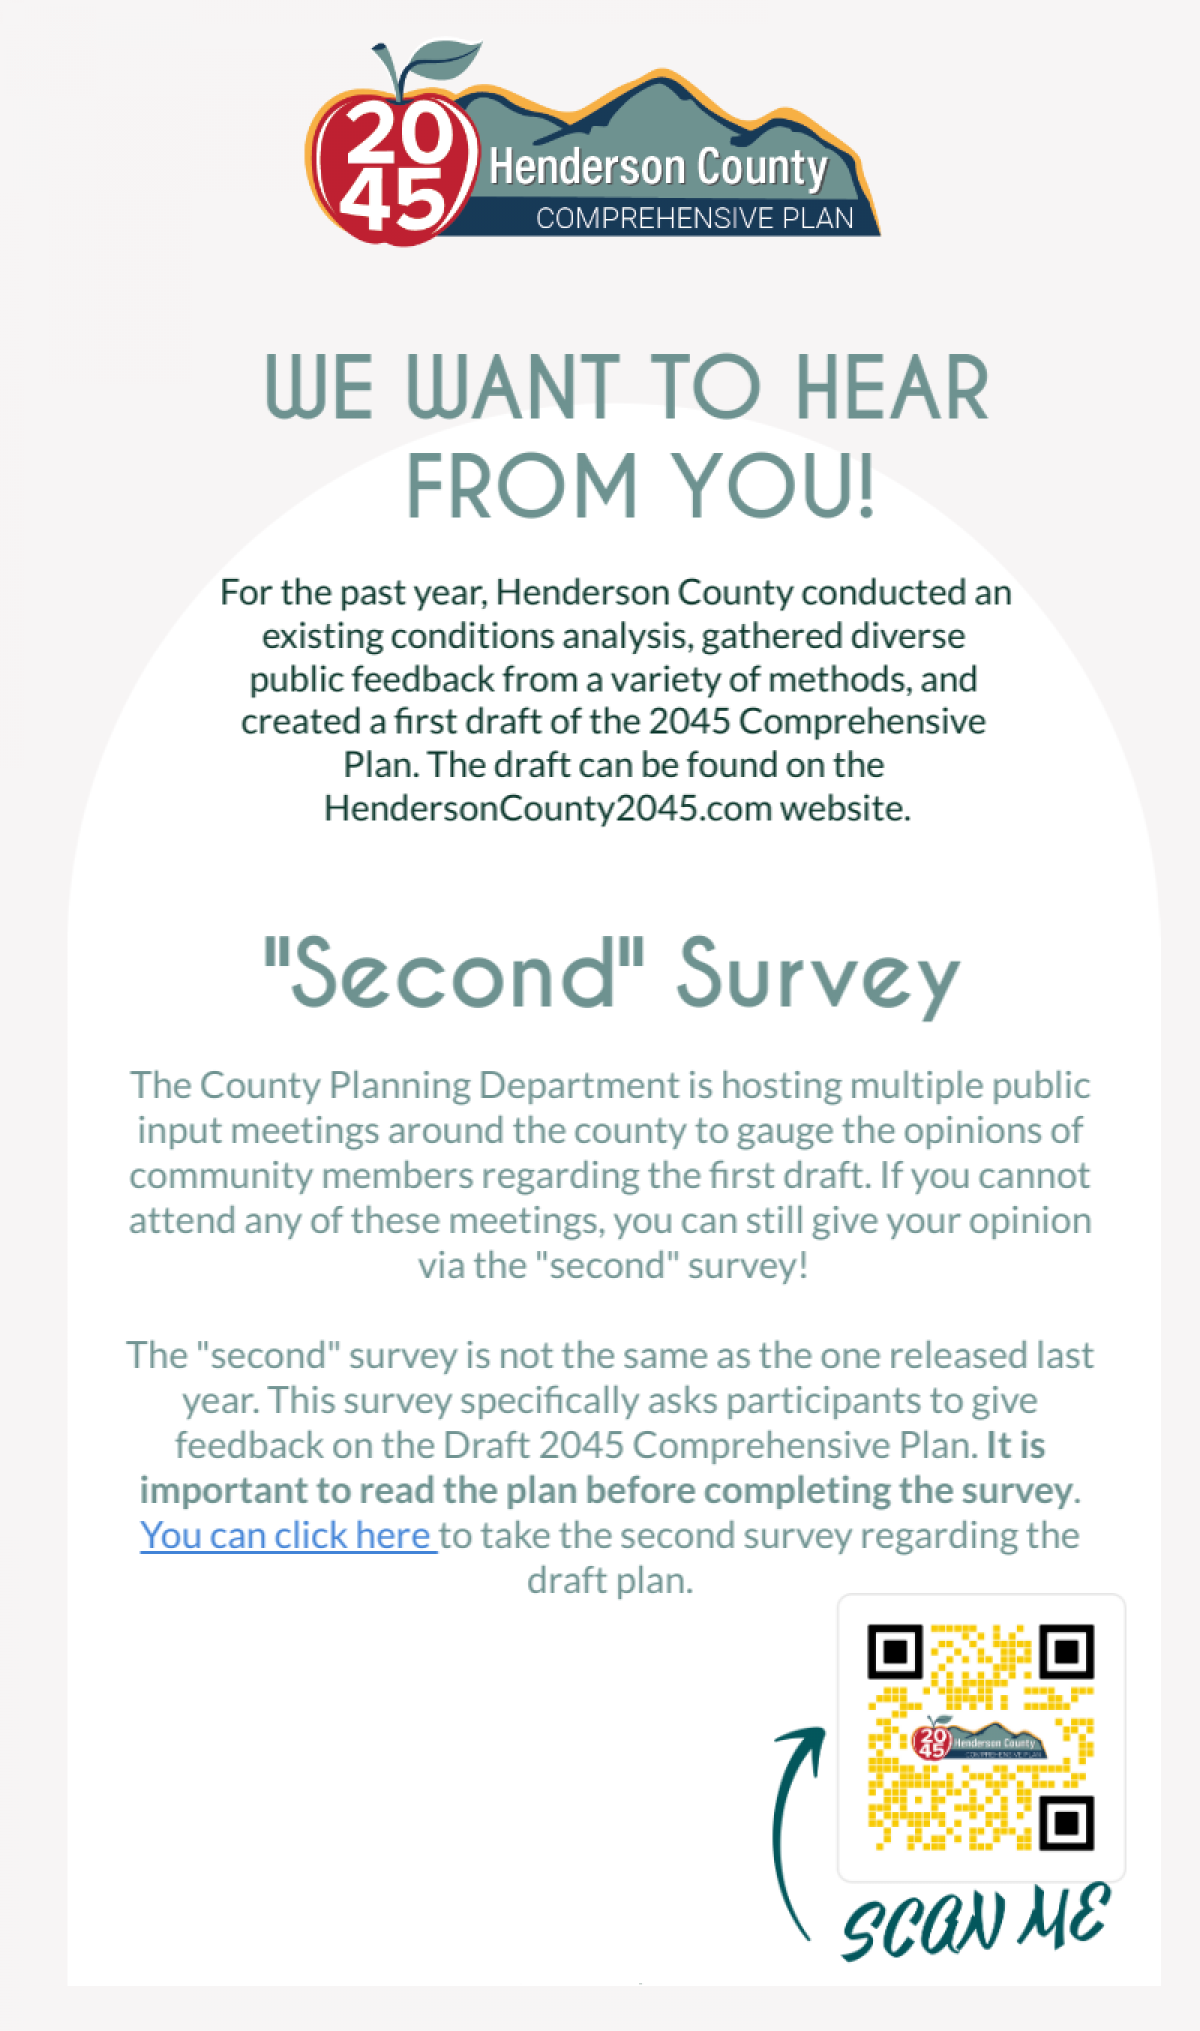 2nd Survey